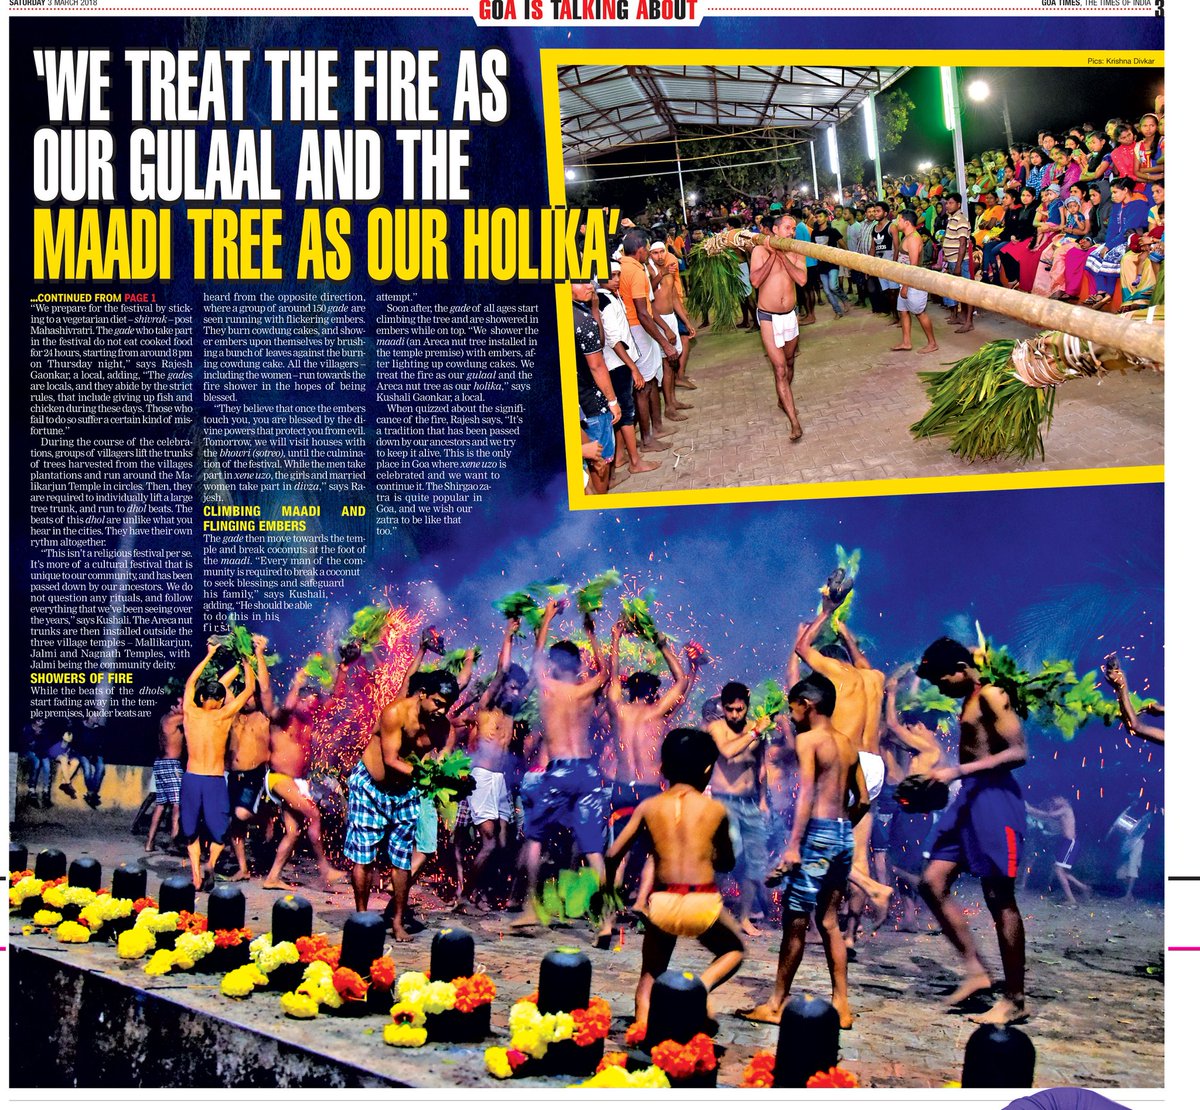 While India plays holi with colours, Molcornem plays holi with fire!

timesofindia.indiatimes.com/entertainment/…

#shigmo #holi #goa #festivals #festivalsofgoa